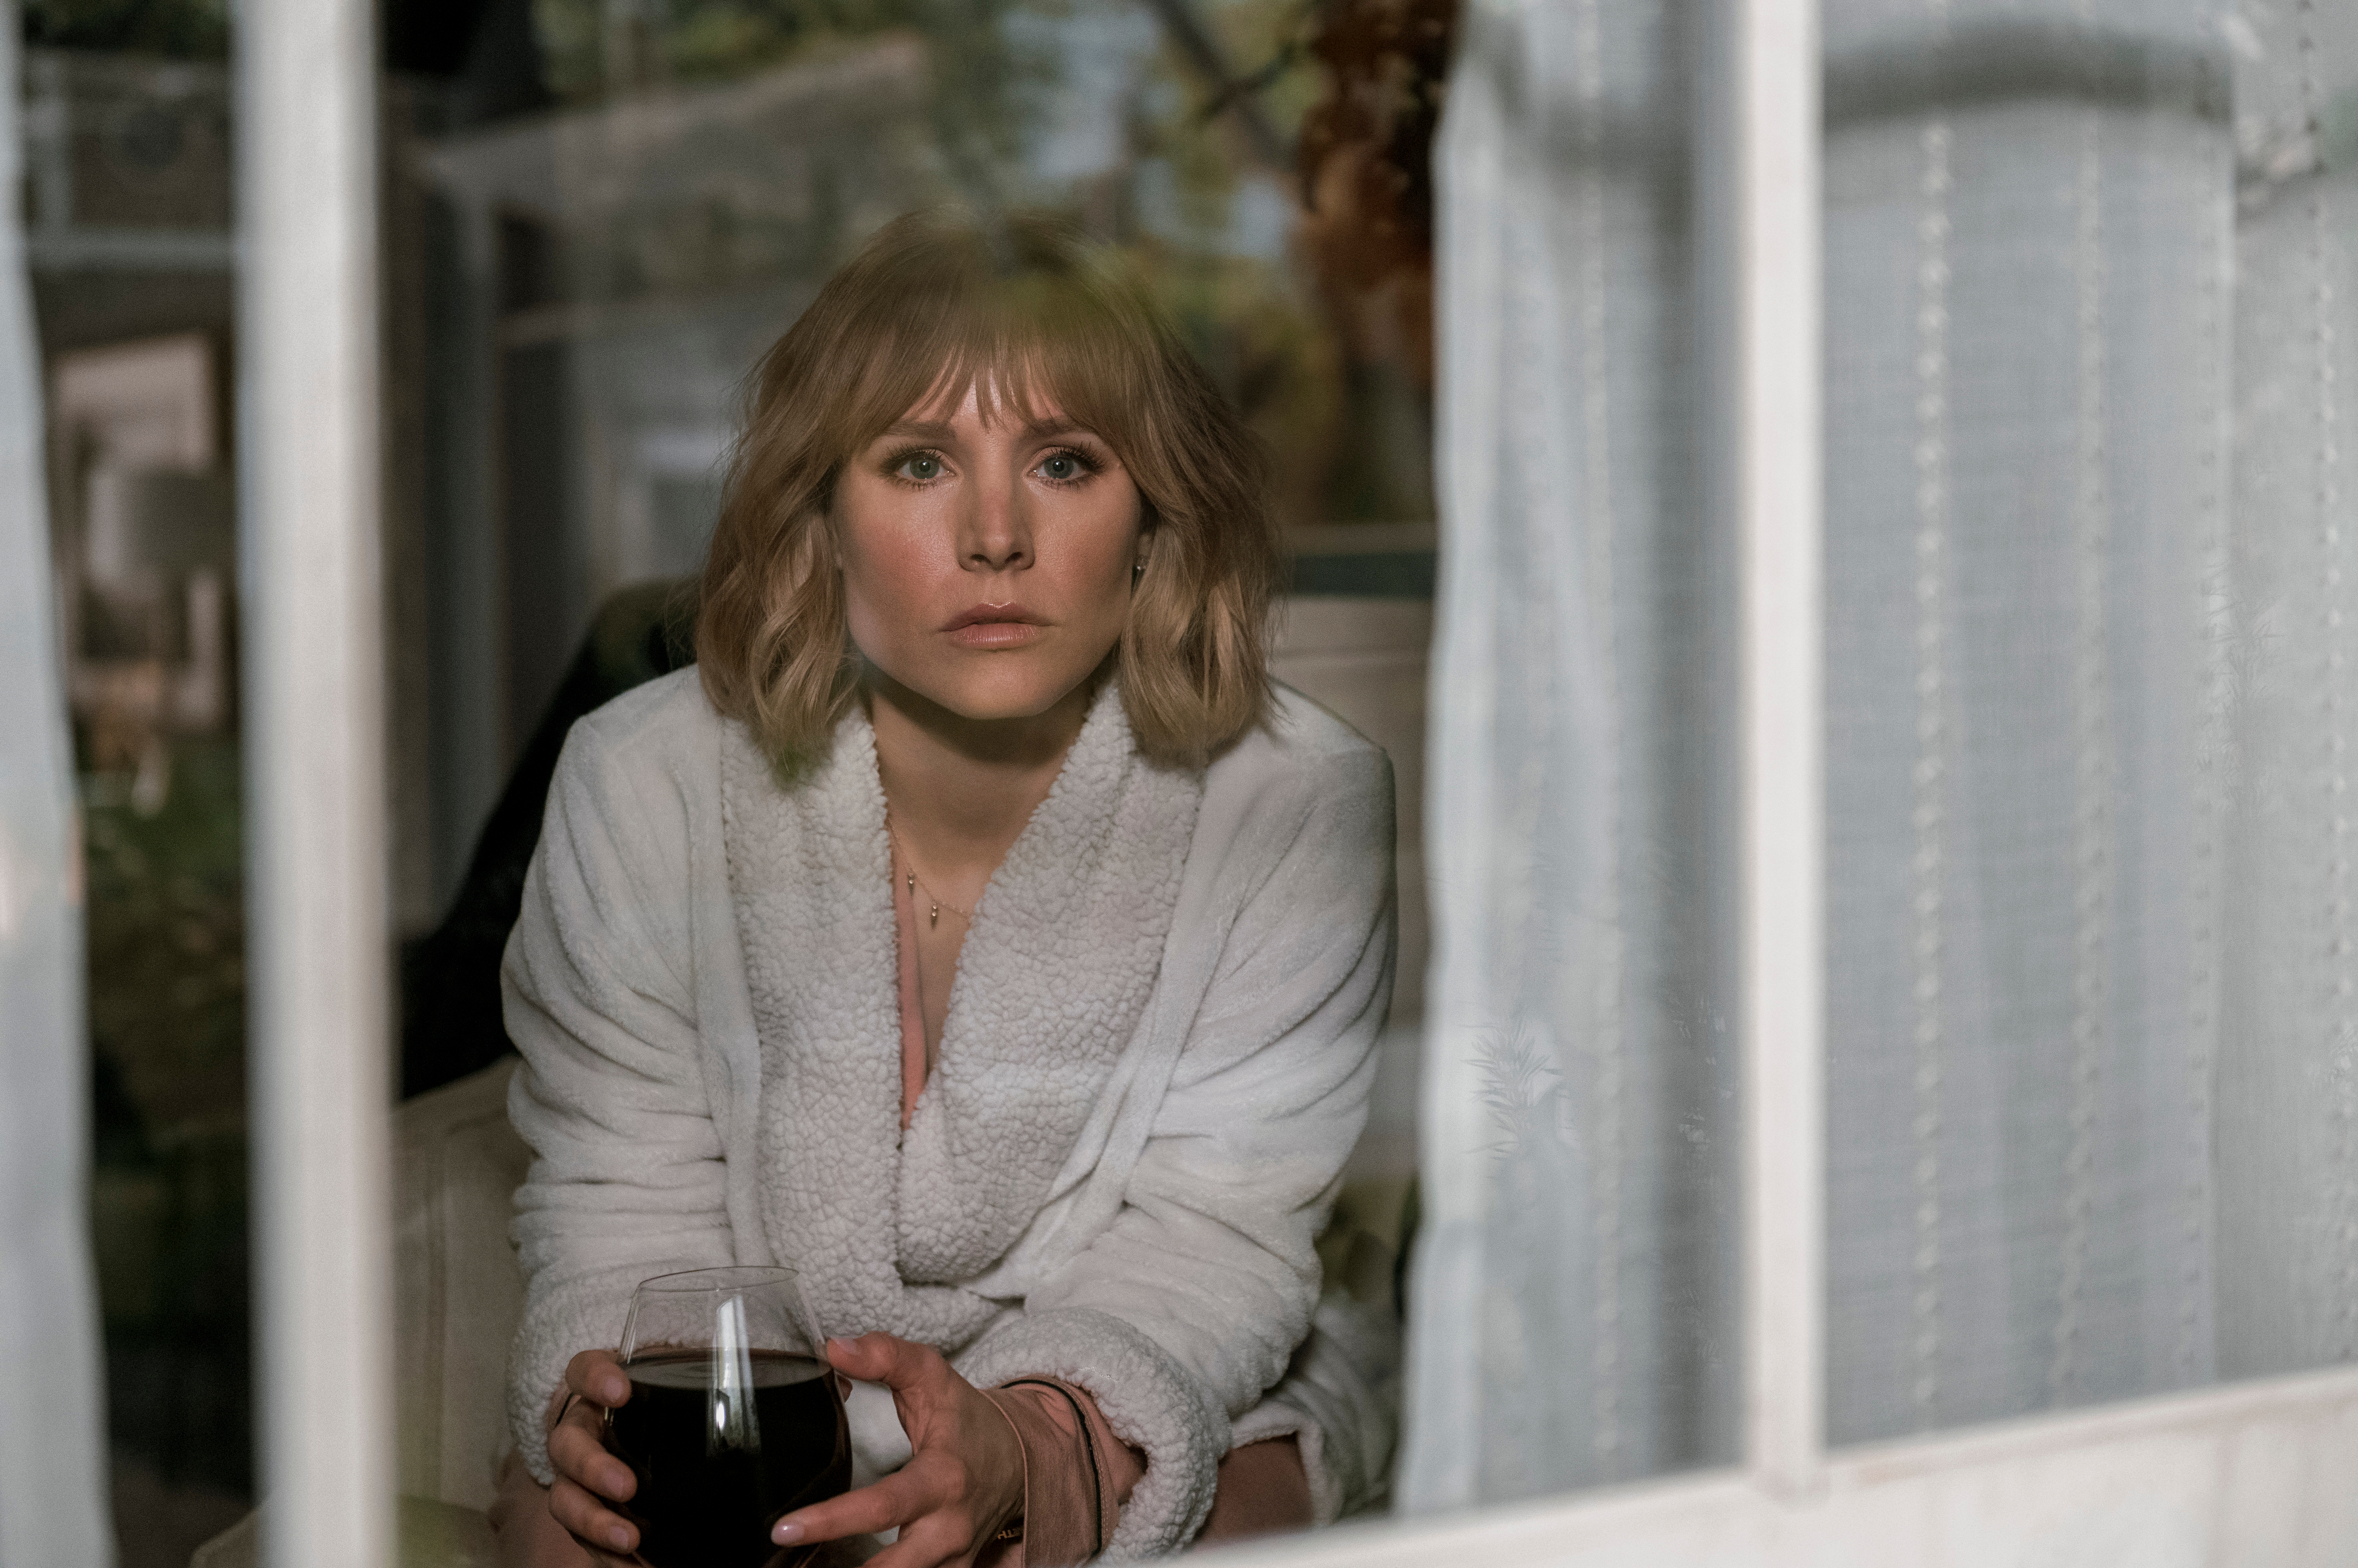 La mujer de la casa de enfrente de la chica de la ventana es una comedia negra donde Kristen Bell brilla parodiando los thrillers psicológicos con mujeres